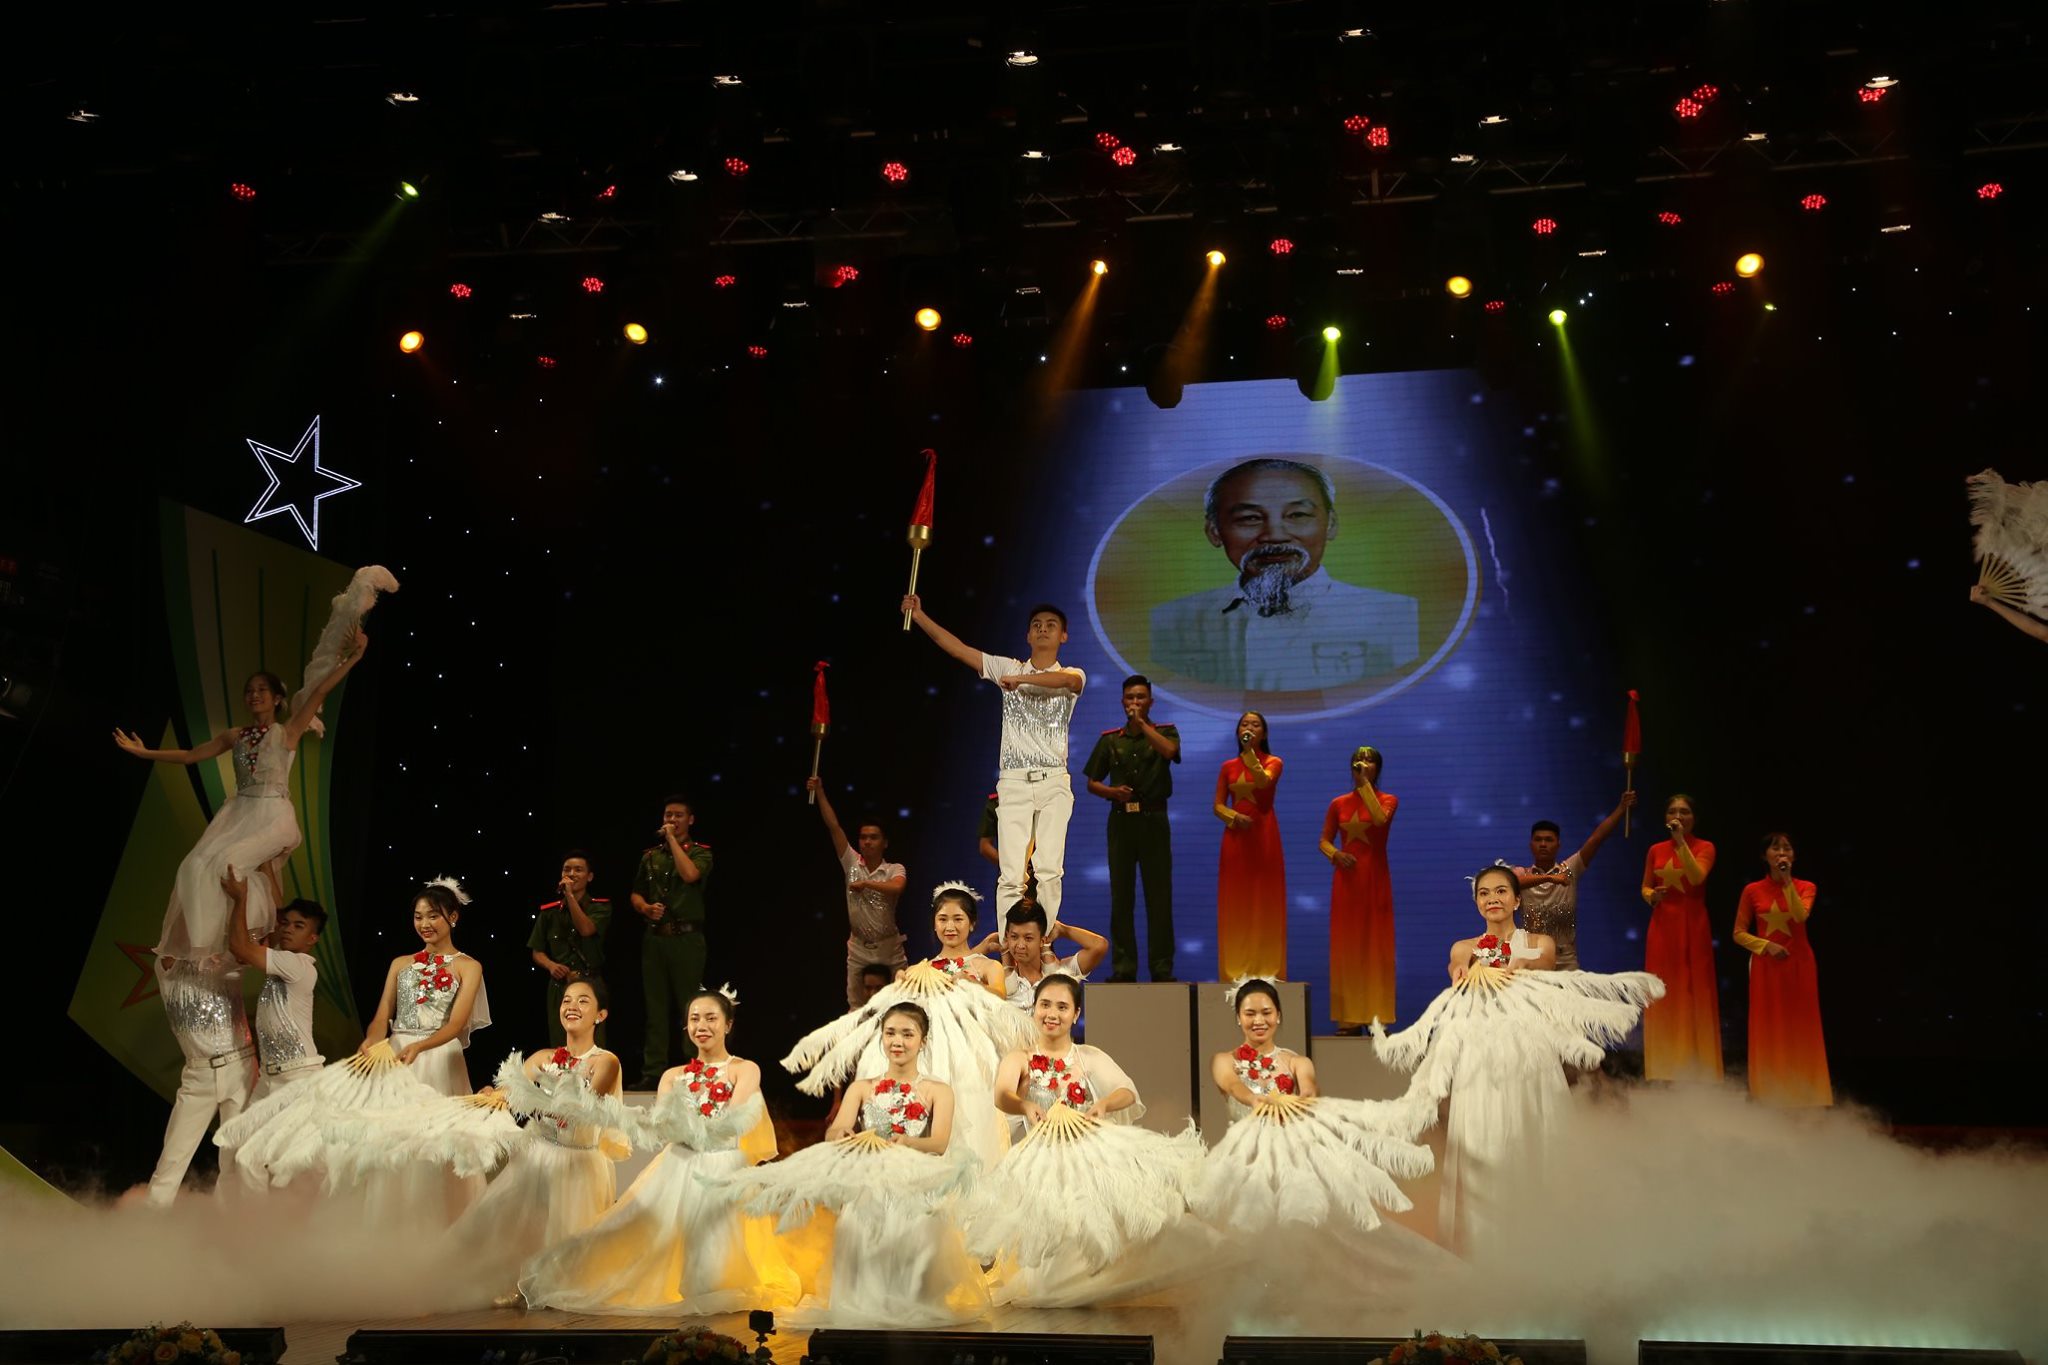 Hát múa “Bay lên Việt Nam huyền thoại” hào hùng, tráng khí kết lại trọn vẹn chương trình nghệ thuật tham dự Hội diễn của Đoàn Học viện